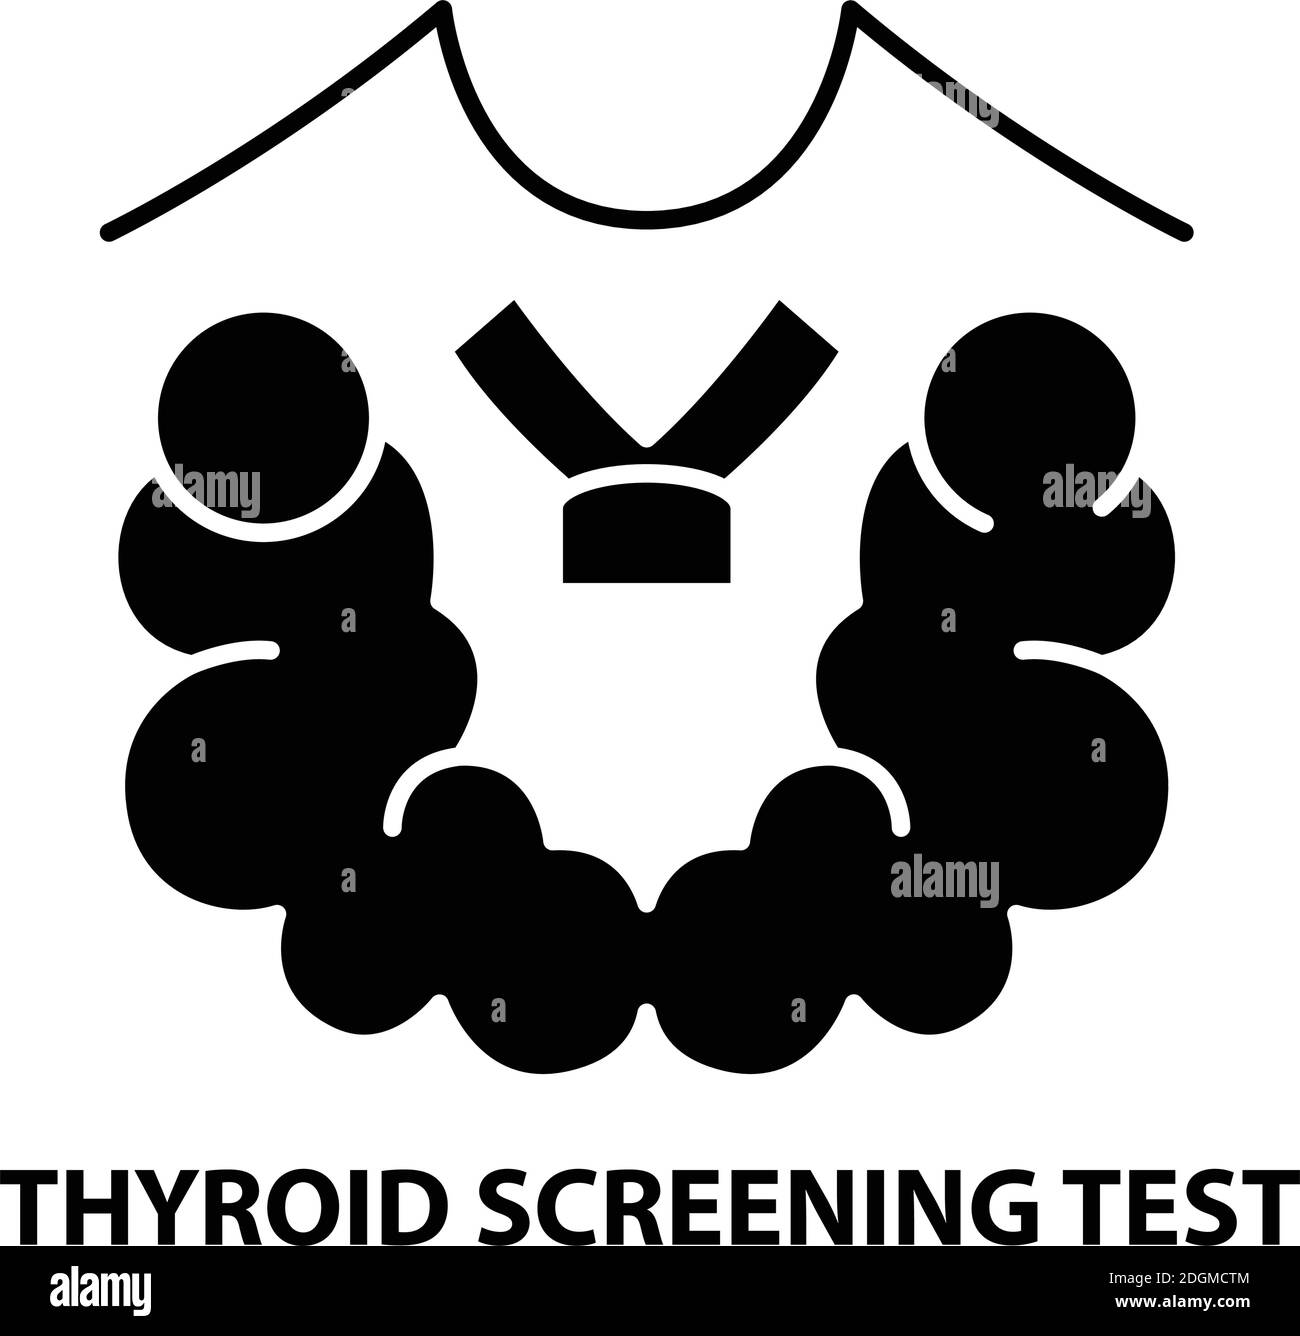 Symbol für Schilddrüsen-Screening-Test, schwarzes Vektorzeichen mit bearbeitbaren Striche, Konzeptdarstellung Stock Vektor